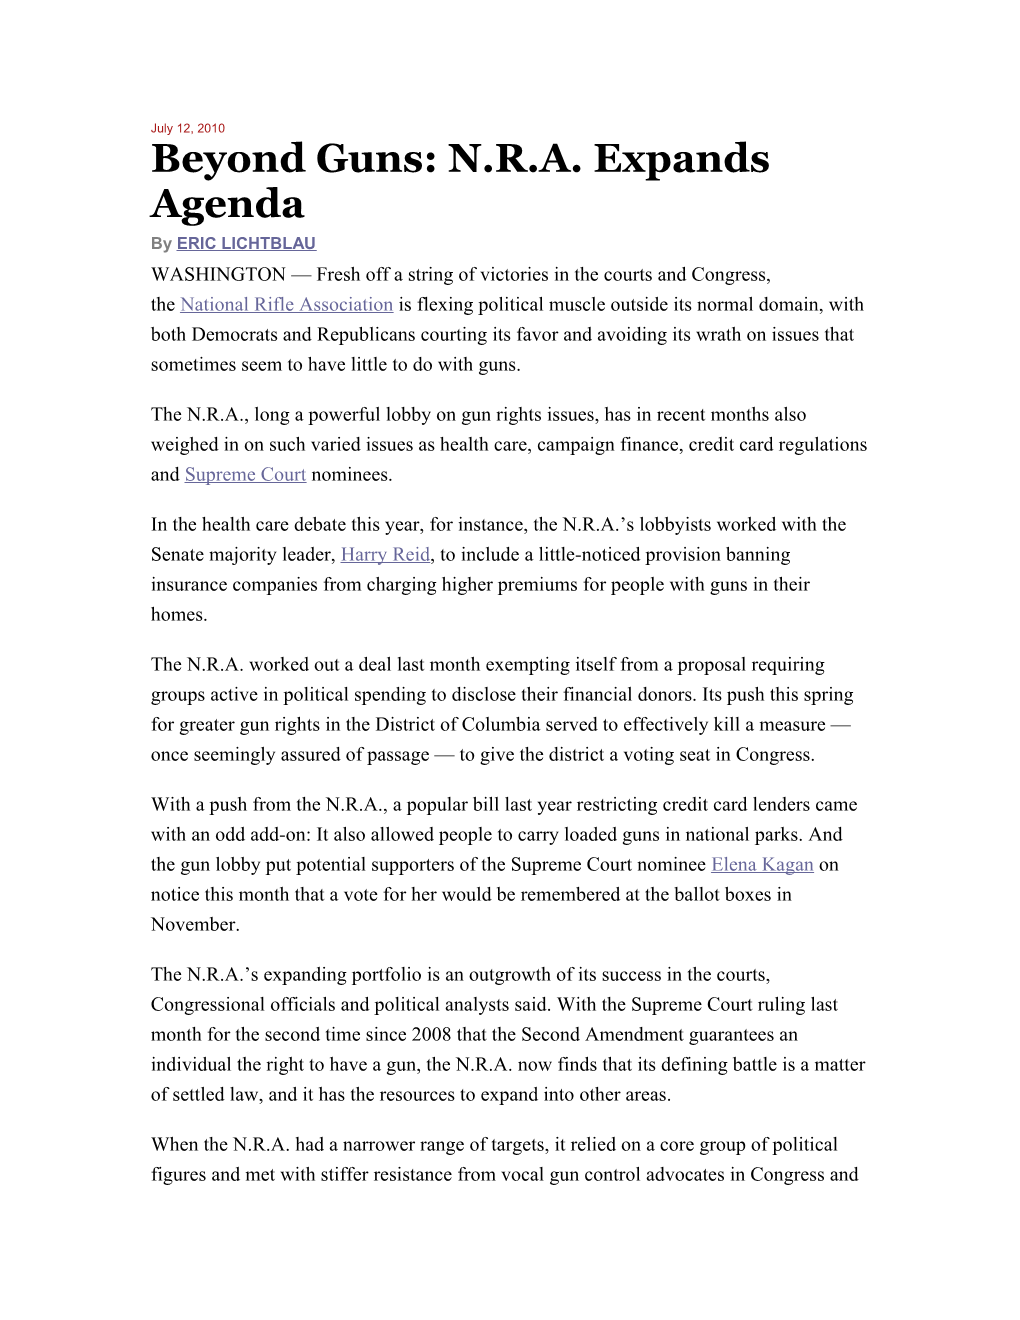 Beyond Guns: N.R.A. Expands Agenda